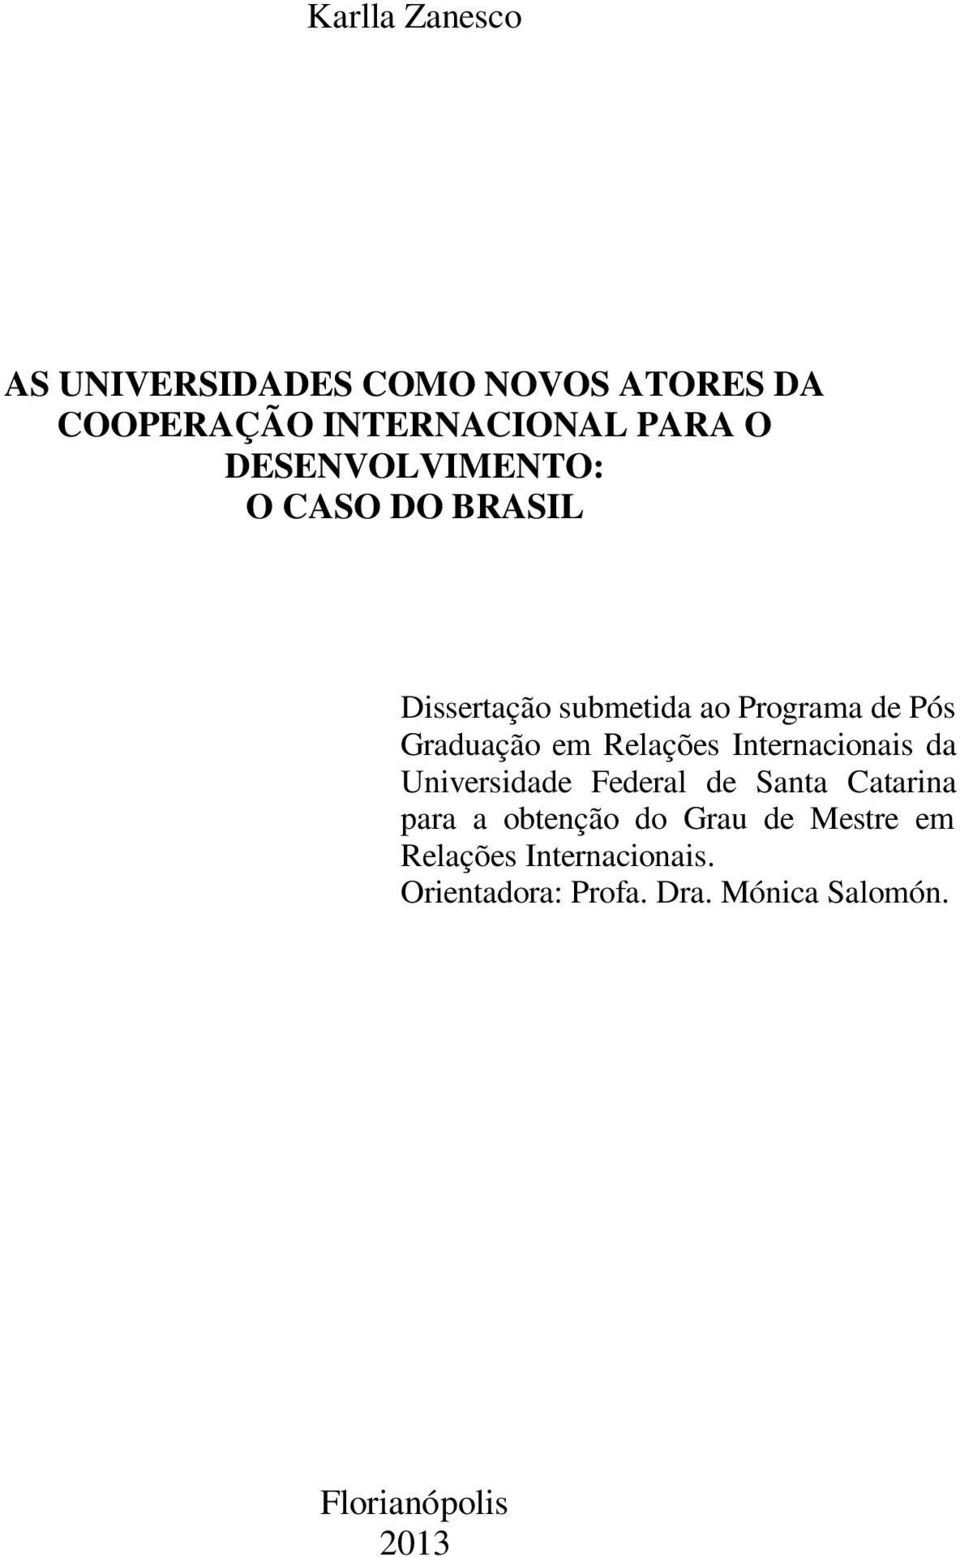 Relações Internacionais da Universidade Federal de Santa Catarina para a obtenção do Grau